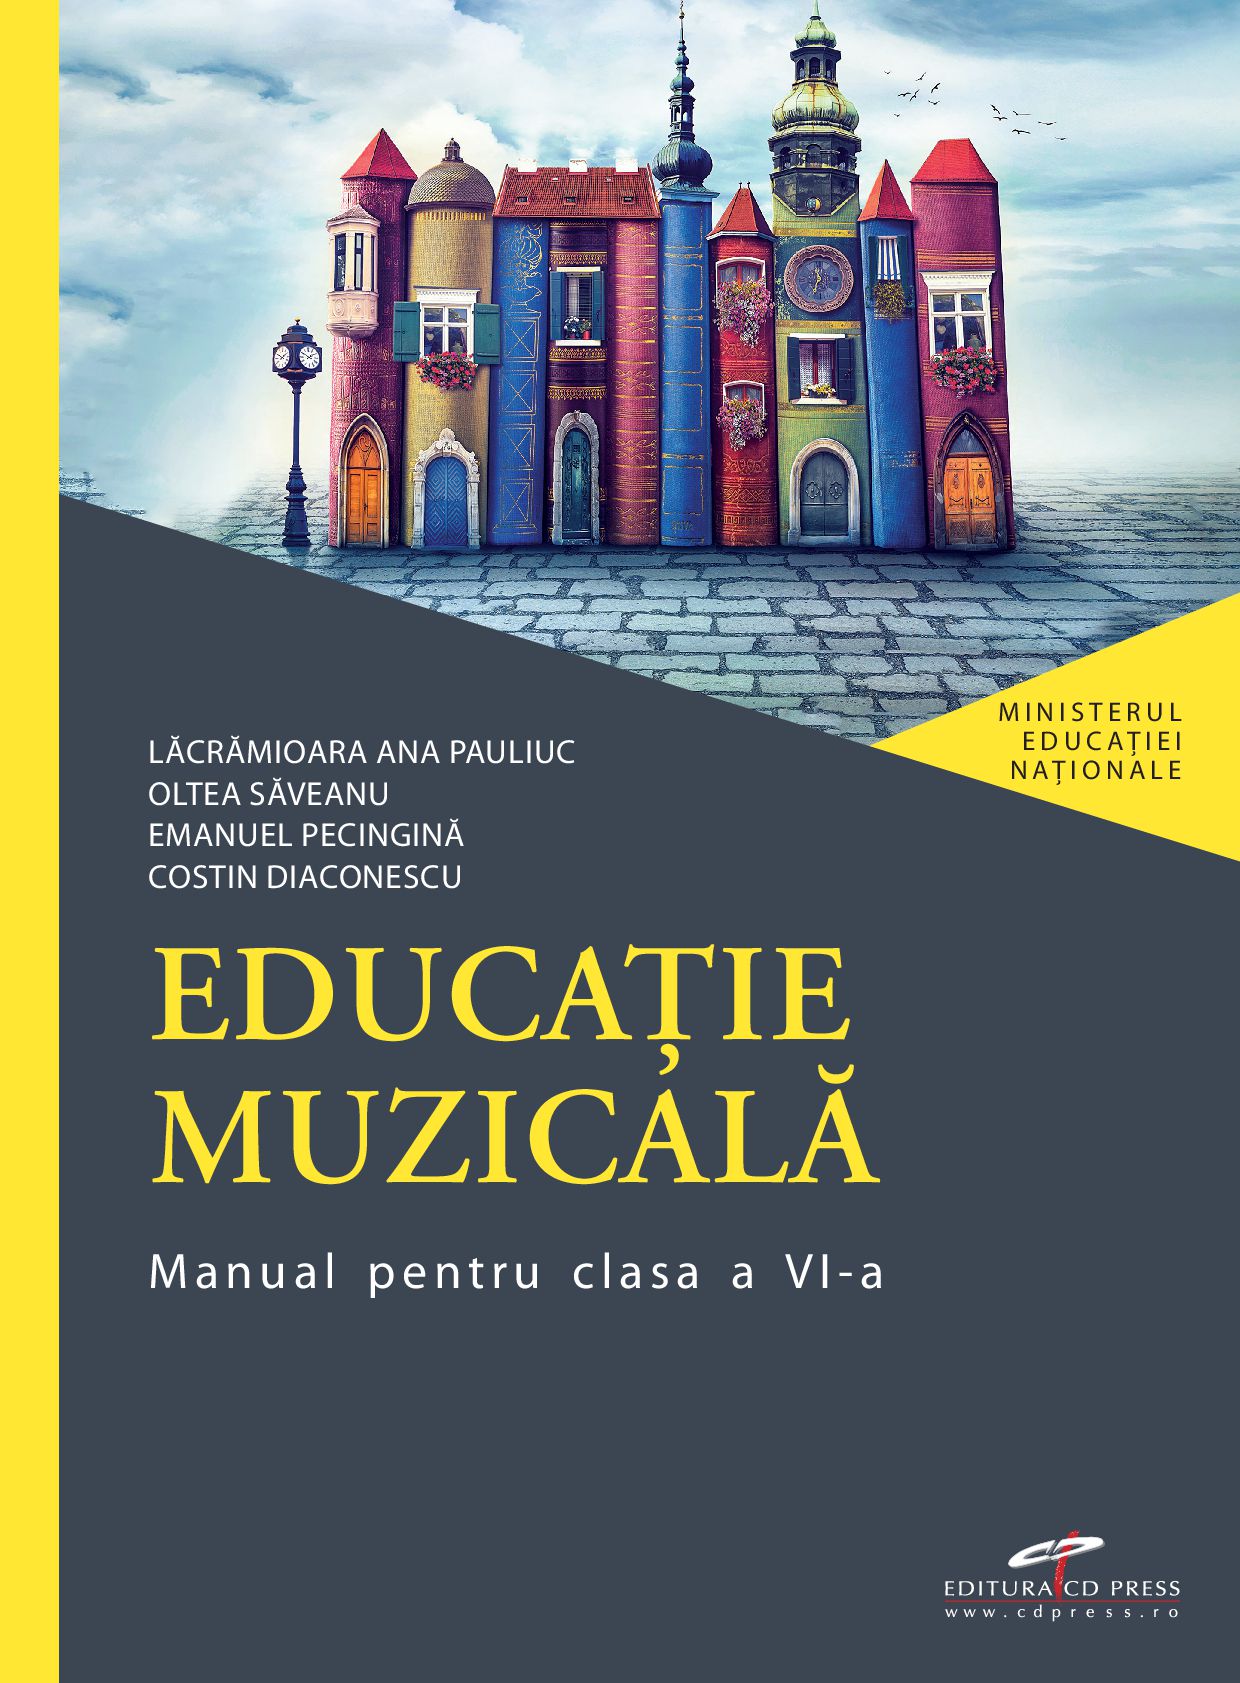 Manual de educatie muzicala - Clasa a VI-a | Lacramioara Ana Pauliuc, Oltea Saveanu, Emanuel Pecingina, Costin Diaconescu